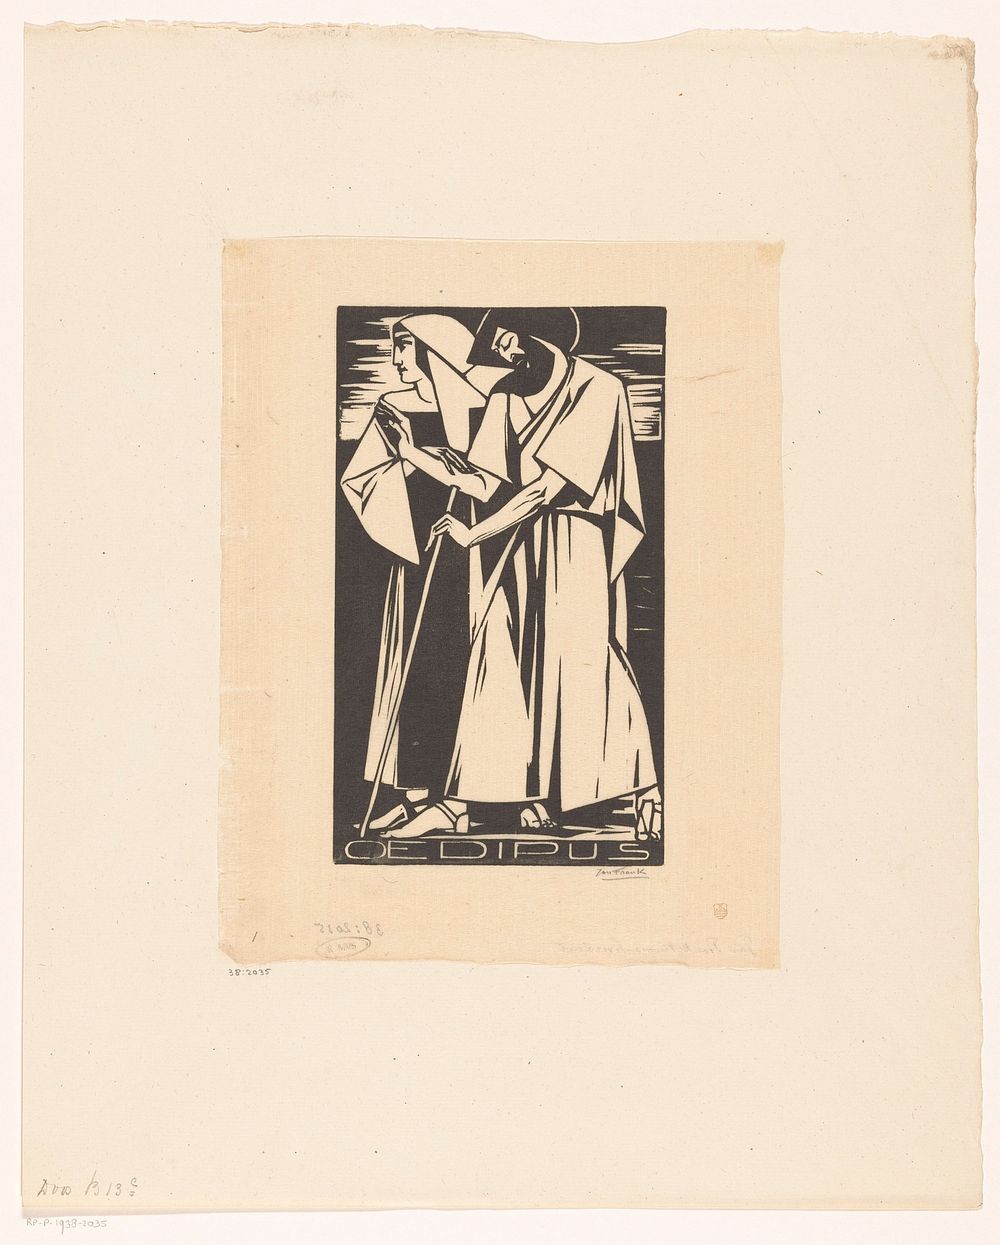 Oedipus (1895 - 1938) by Jan Frank